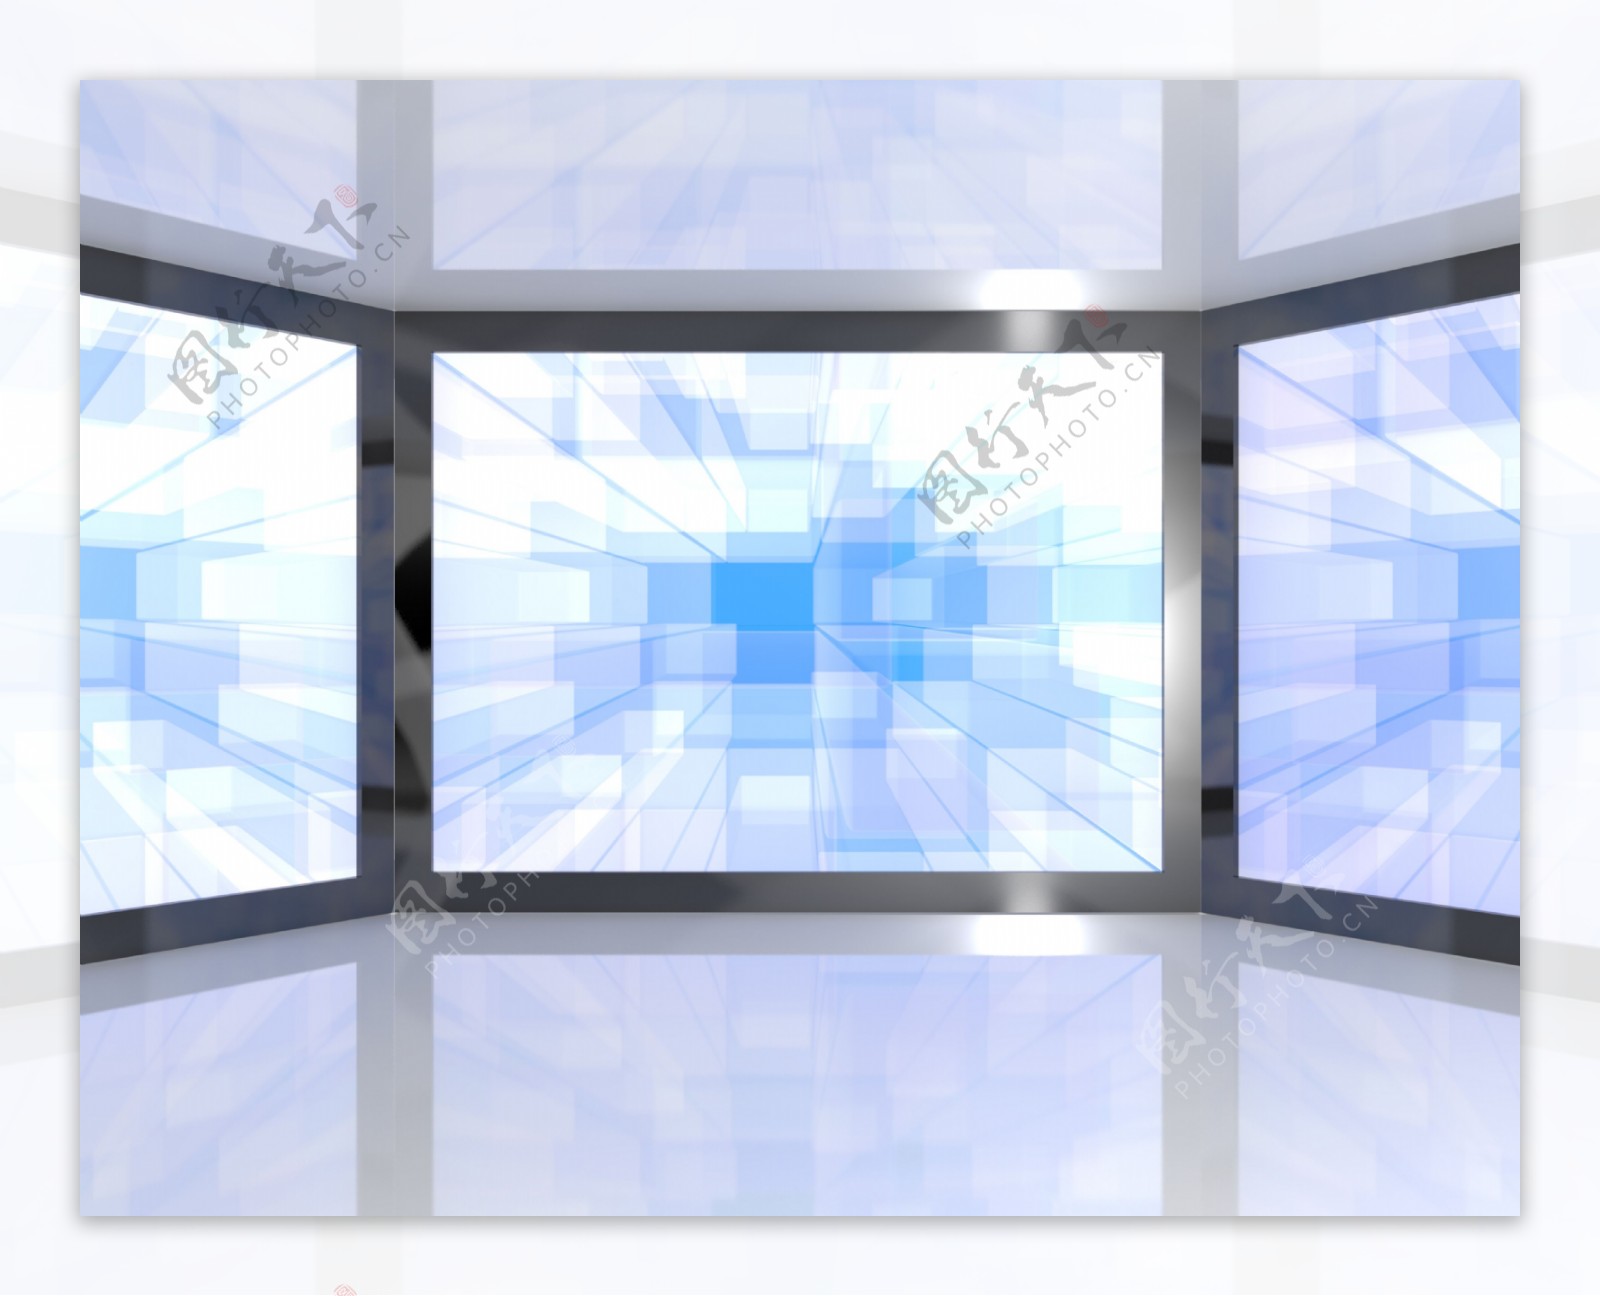 蓝色的大电视显示器壁挂式高清晰度电视或高清电视的代表